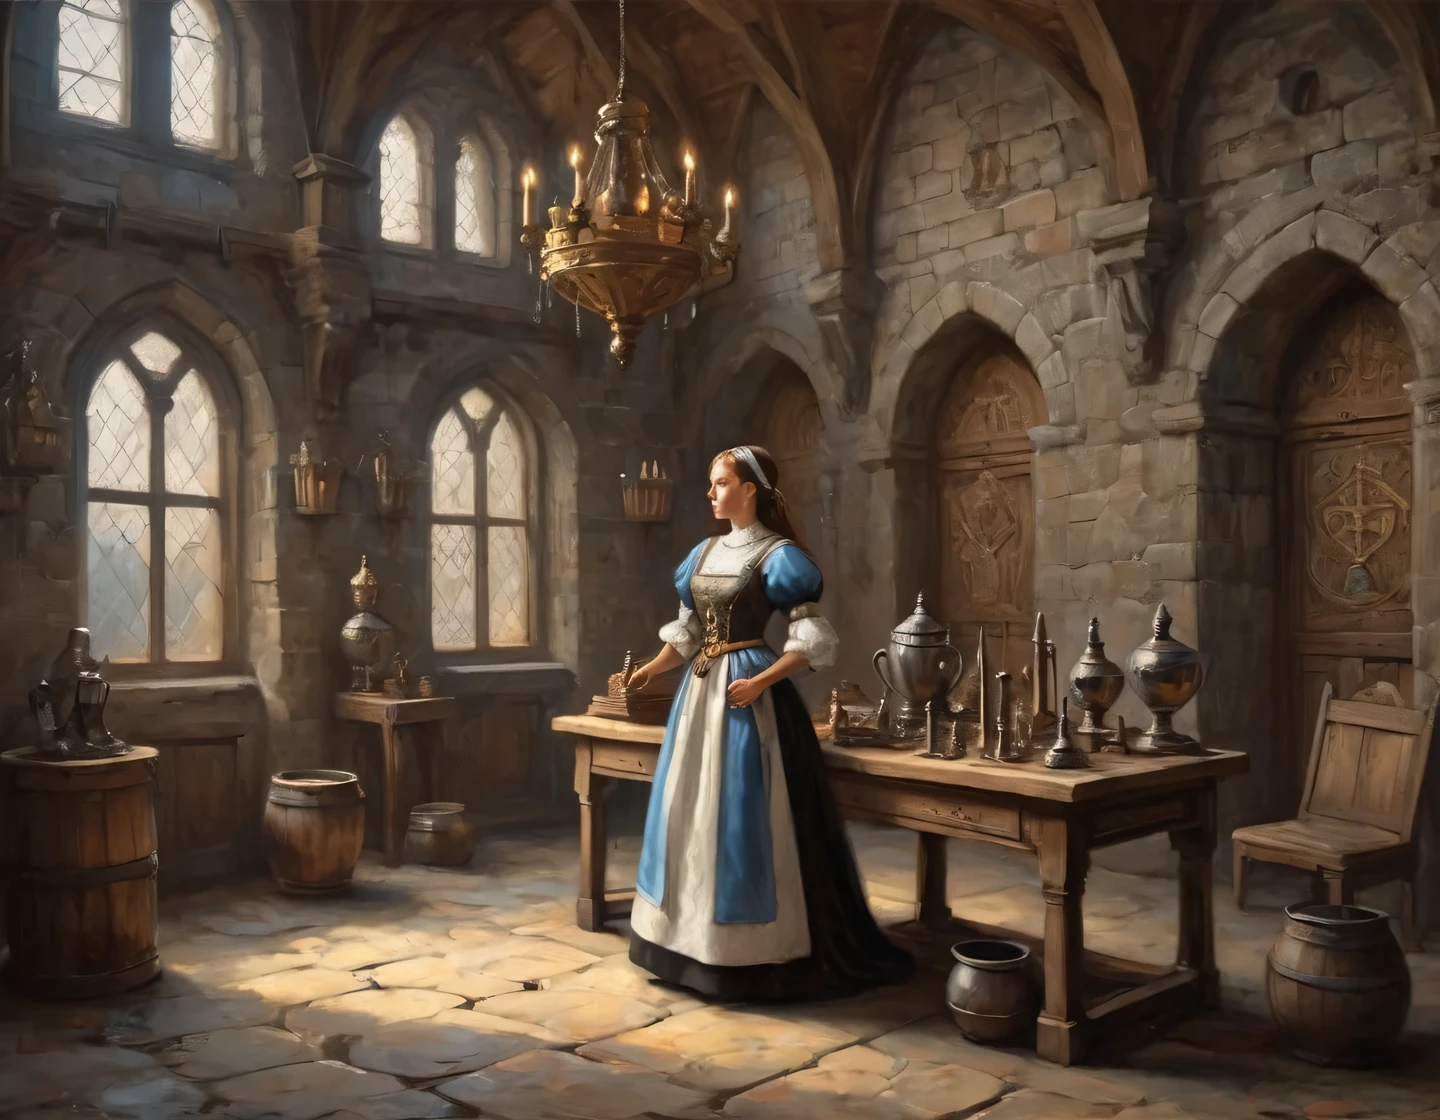 一张古老的照片, 身着女仆装的机器人女孩正在中世纪城堡的大厅里建造, 中世纪家具, 墙上的奖杯和武器, 纹章, 实际的